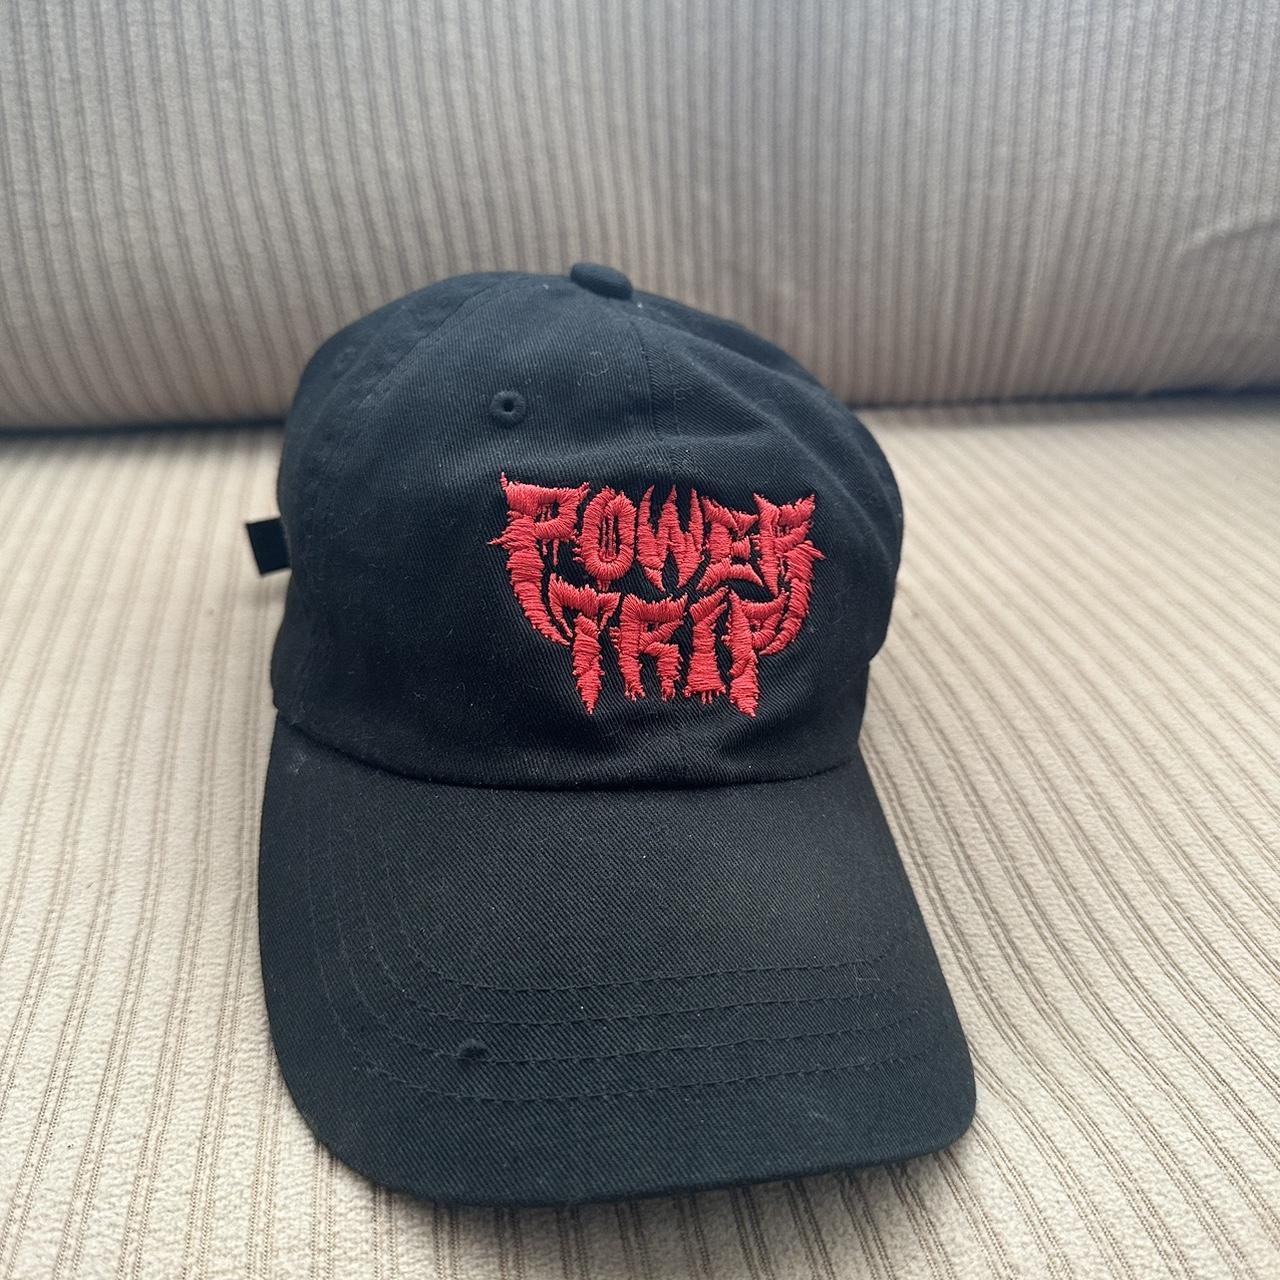 Power trip hat #powertrip #nightmarelogic... - Depop